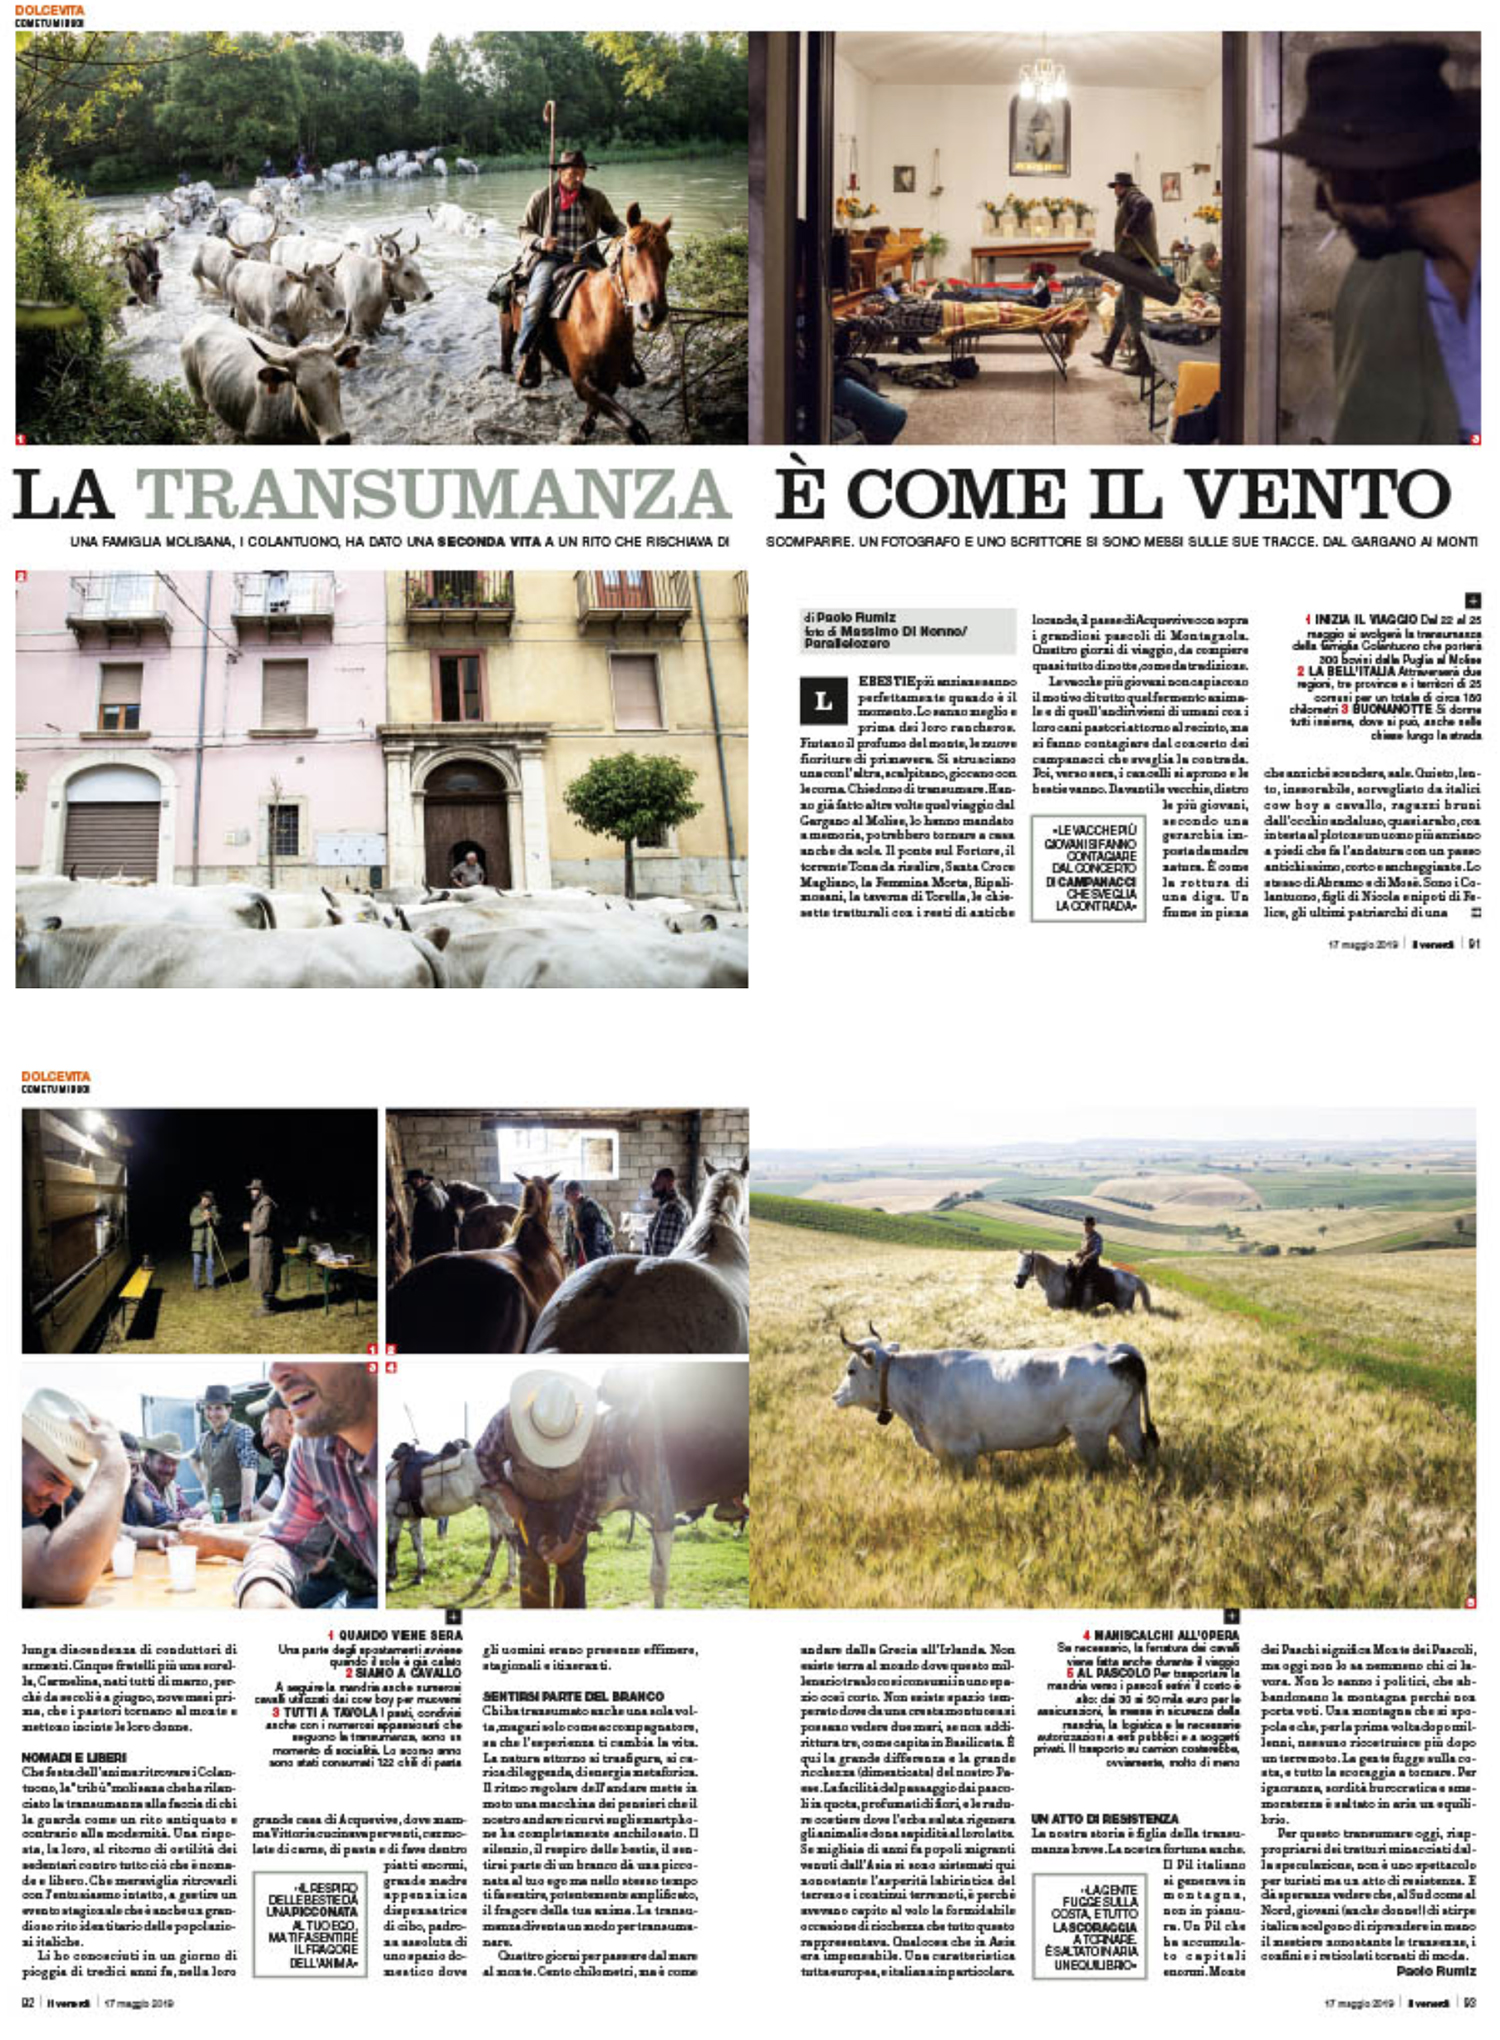 La transumanza è come il vento. - On Il Venerdì weekly magazine of La Repubblica (2019)
 
 
 